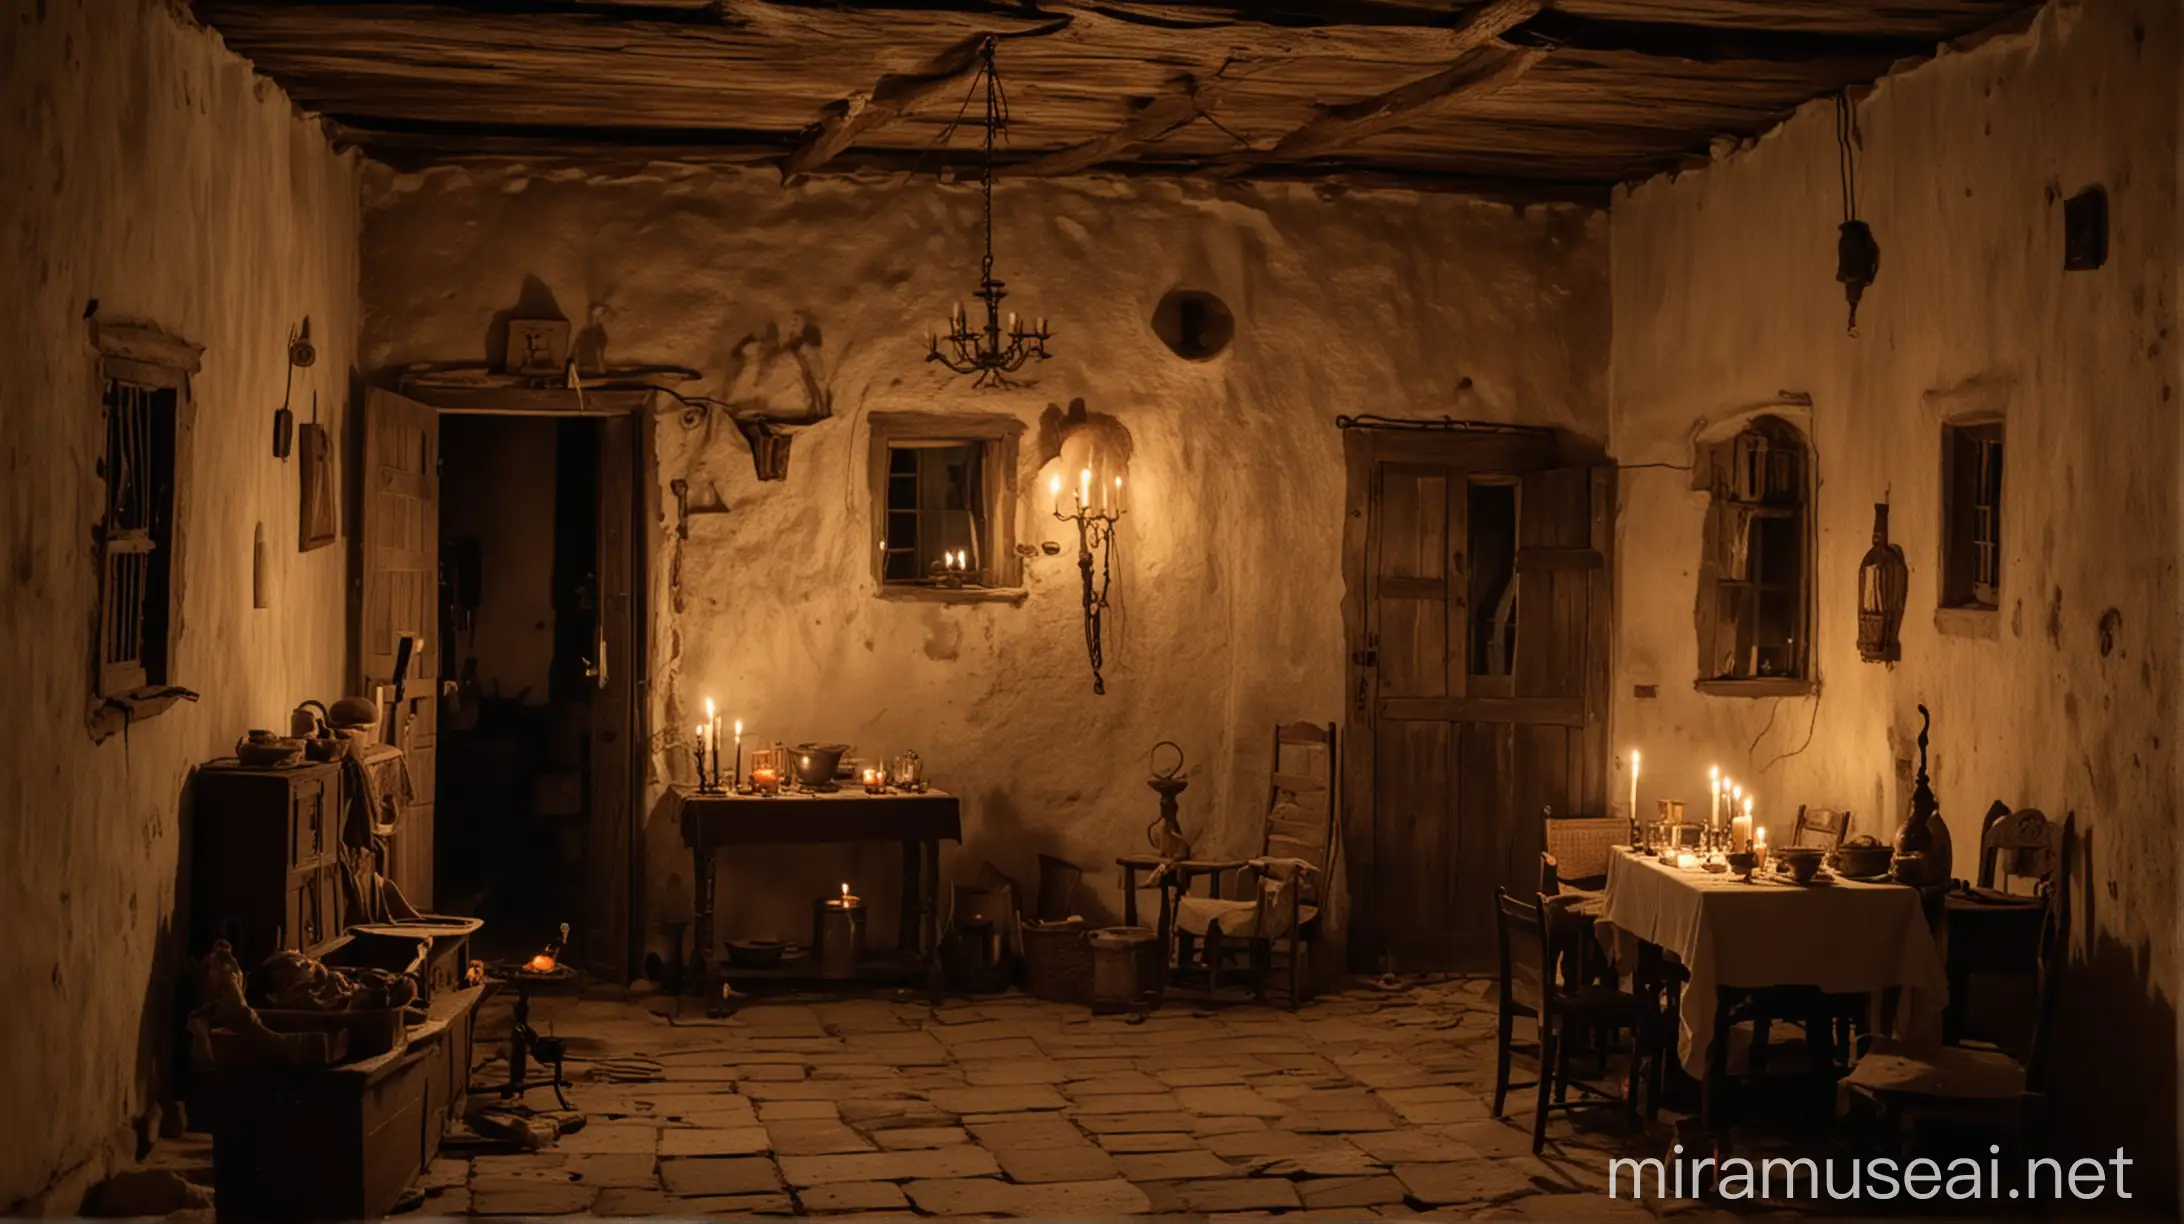 El interior de una casa judía durante el año 30 D.C por la noche. Todo el lugar está iluminado por una luz de vela. La casa es de personas con pocos recursos y no tiene tantos adornos